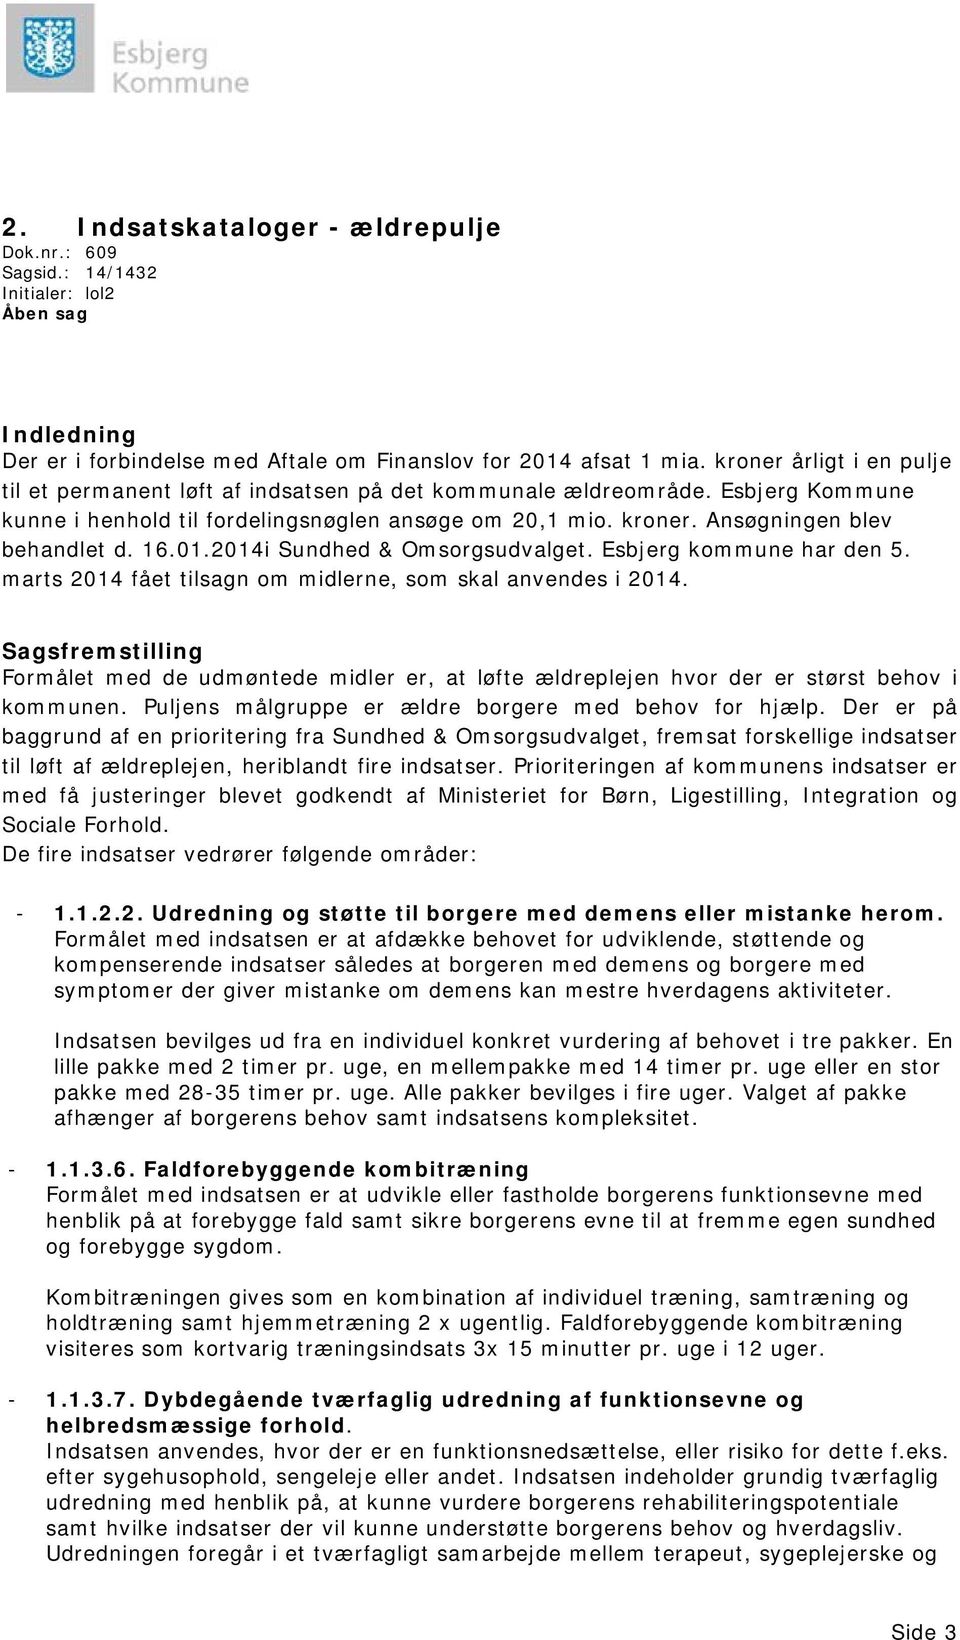 16.01.2014i Sundhed & Omsorgsudvalget. Esbjerg kommune har den 5. marts 2014 fået tilsagn om midlerne, som skal anvendes i 2014.